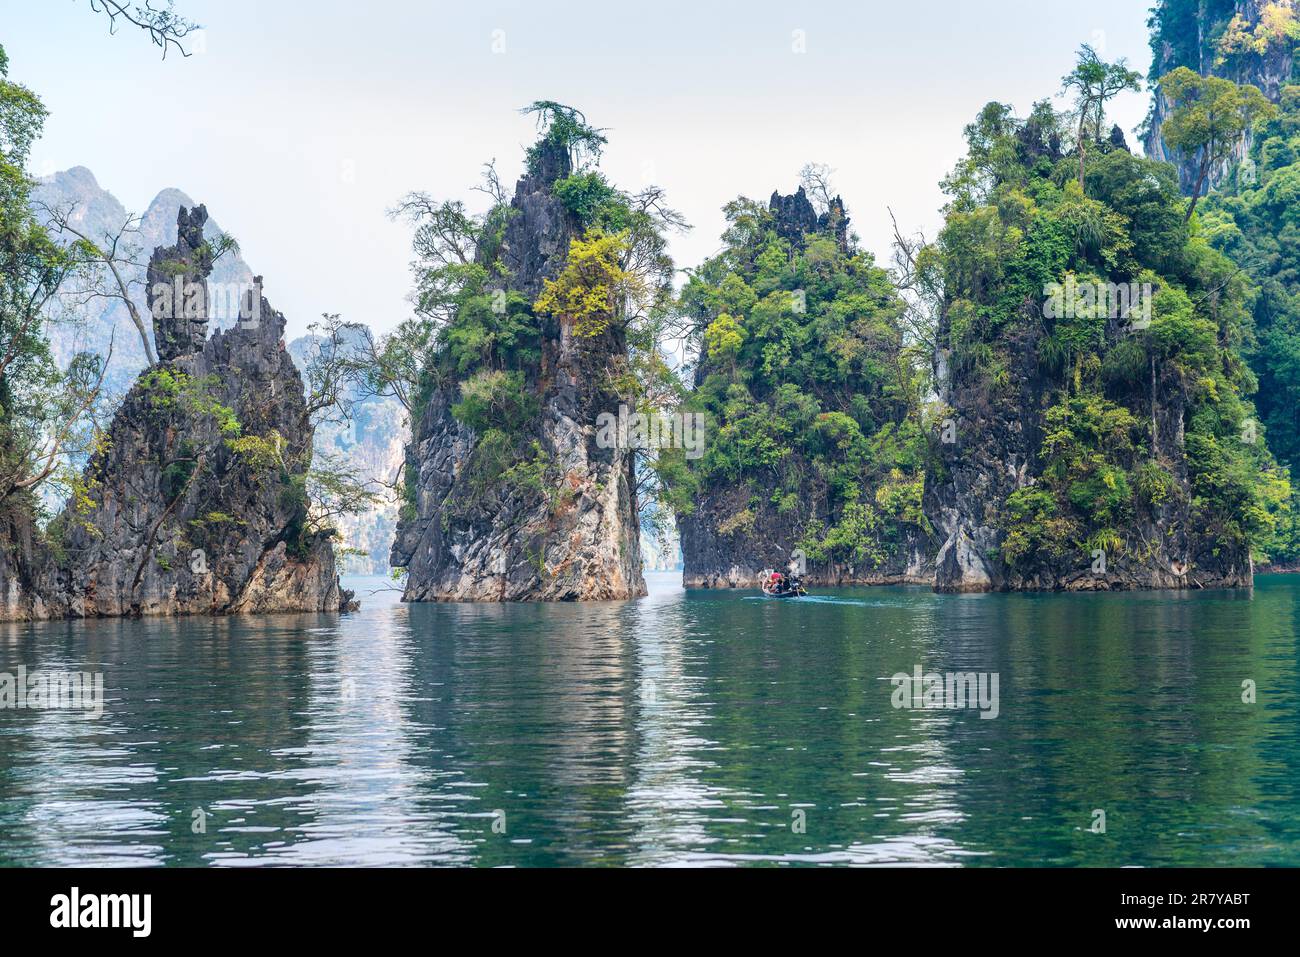 Formazioni carsiche significative nel parco nazionale Khao Sok sorgono sopra il lago Cheow LAN. Rocce calcaree, giungla e carsico determinano l'immagine di Foto Stock